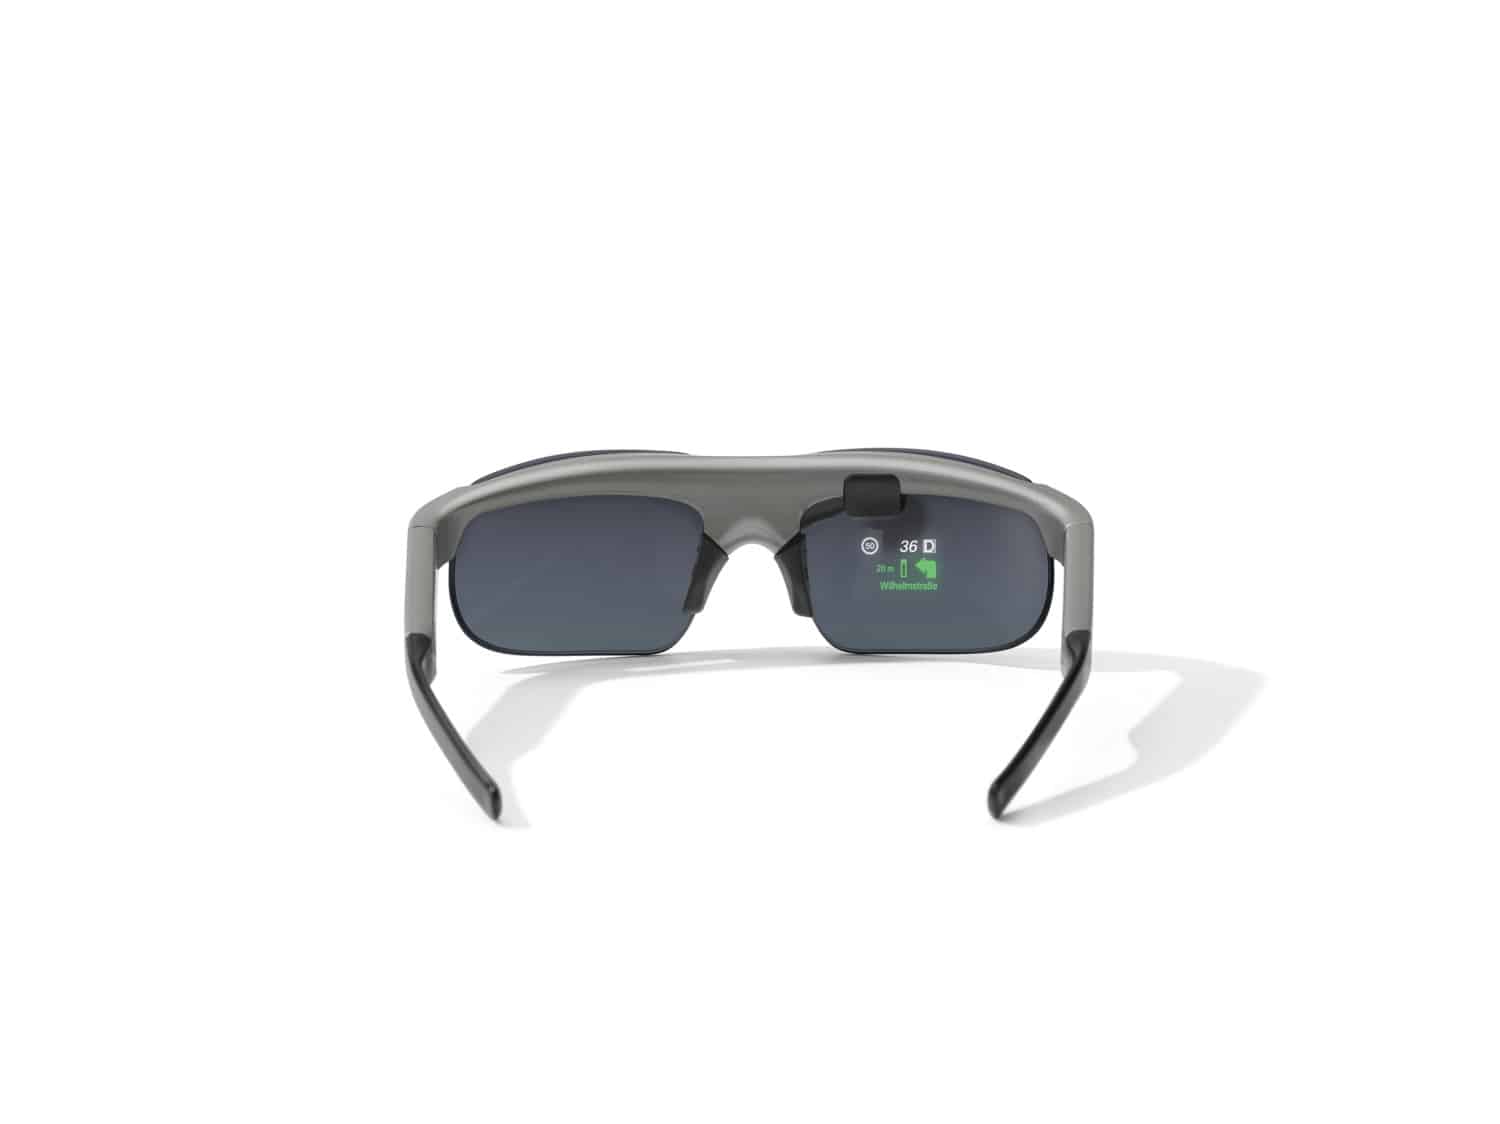 BMW lancerer ny CE 02, nye smarte briller med head-up display samt det virtuelle BMW Motorrad MetaRide